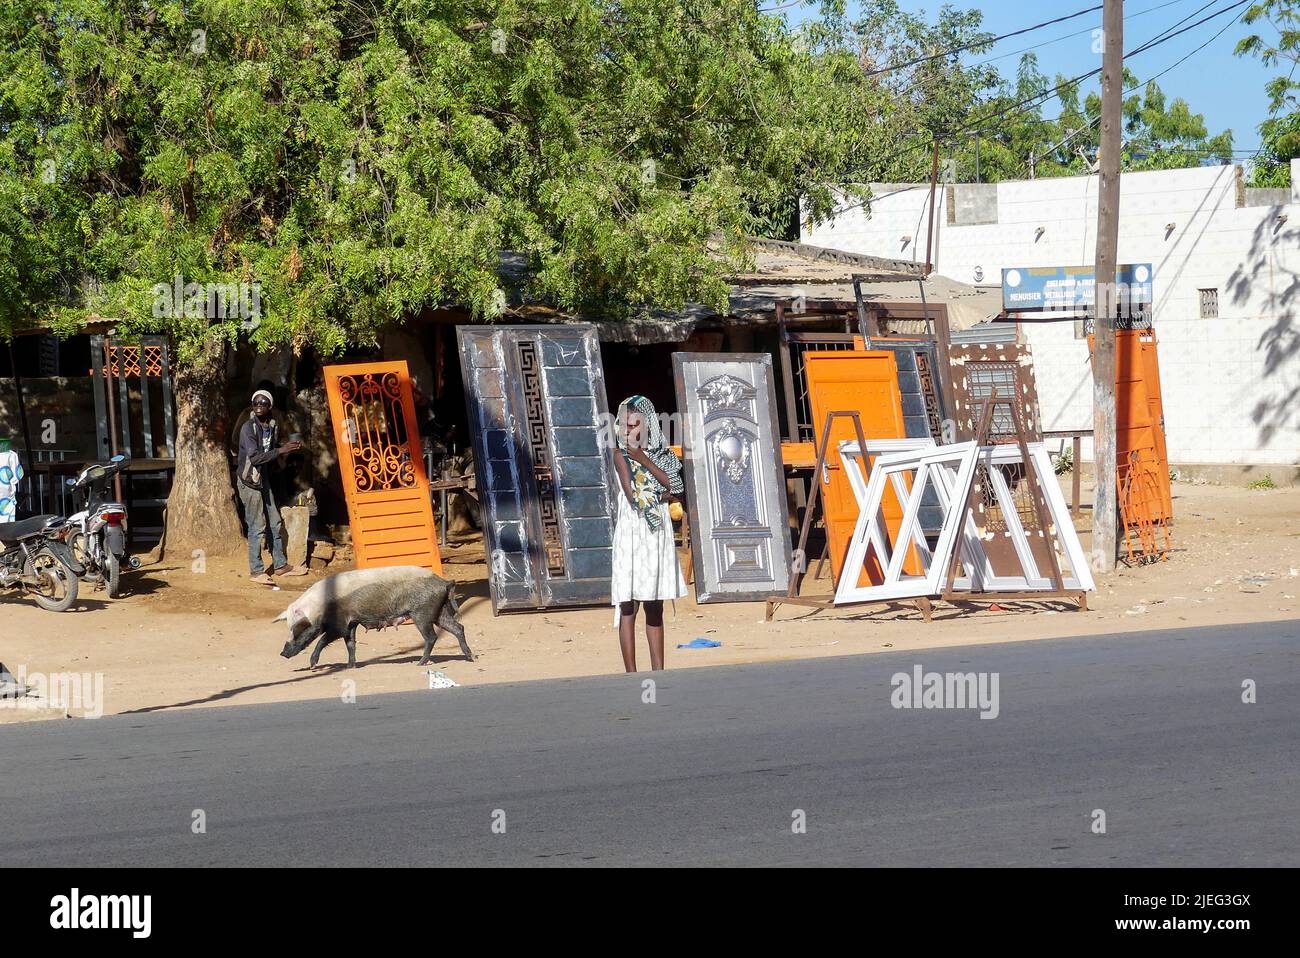 Jeune fille africaine noire debout devant un magasin de menuisier en métal dans la ville de Touba, Sénégal, Afrique de l'Ouest pendant qu'une vache (porcins féminins) passe. Banque D'Images